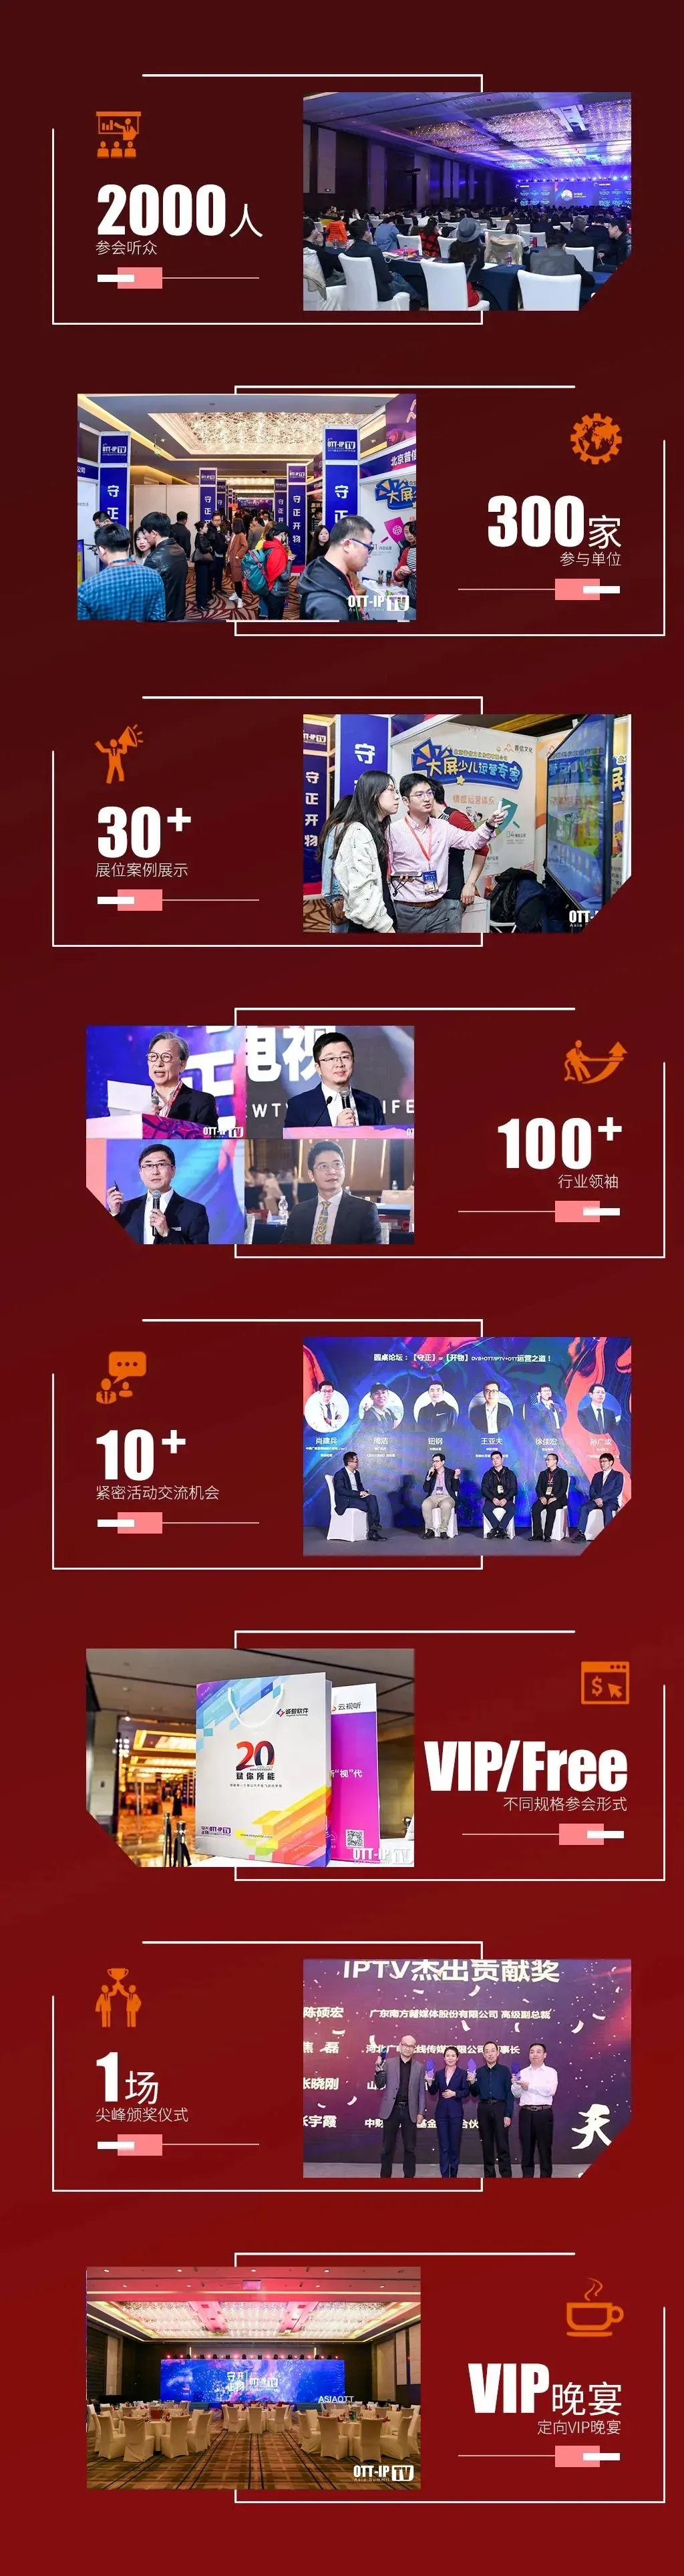 「和合 · 共生」2021亚太OTT/IPTV大会